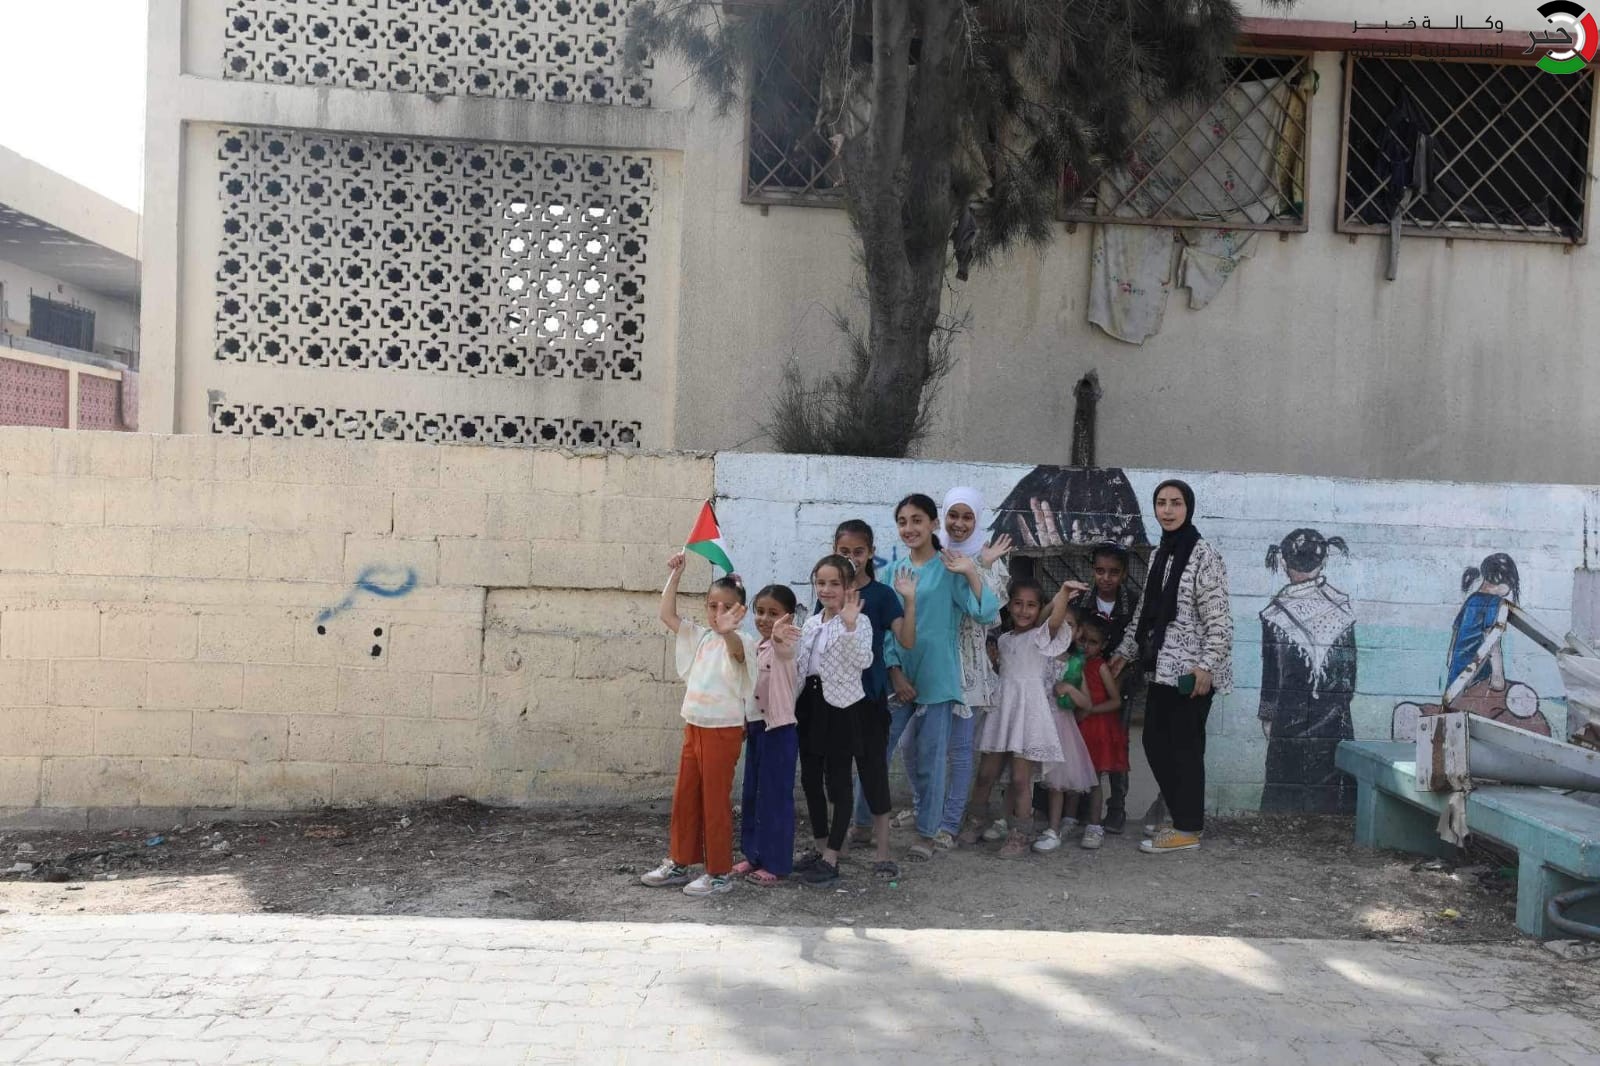  حفل ترفيهي يرسم البسمة على وجوه أطفال شمال قطاع غزة BFliv